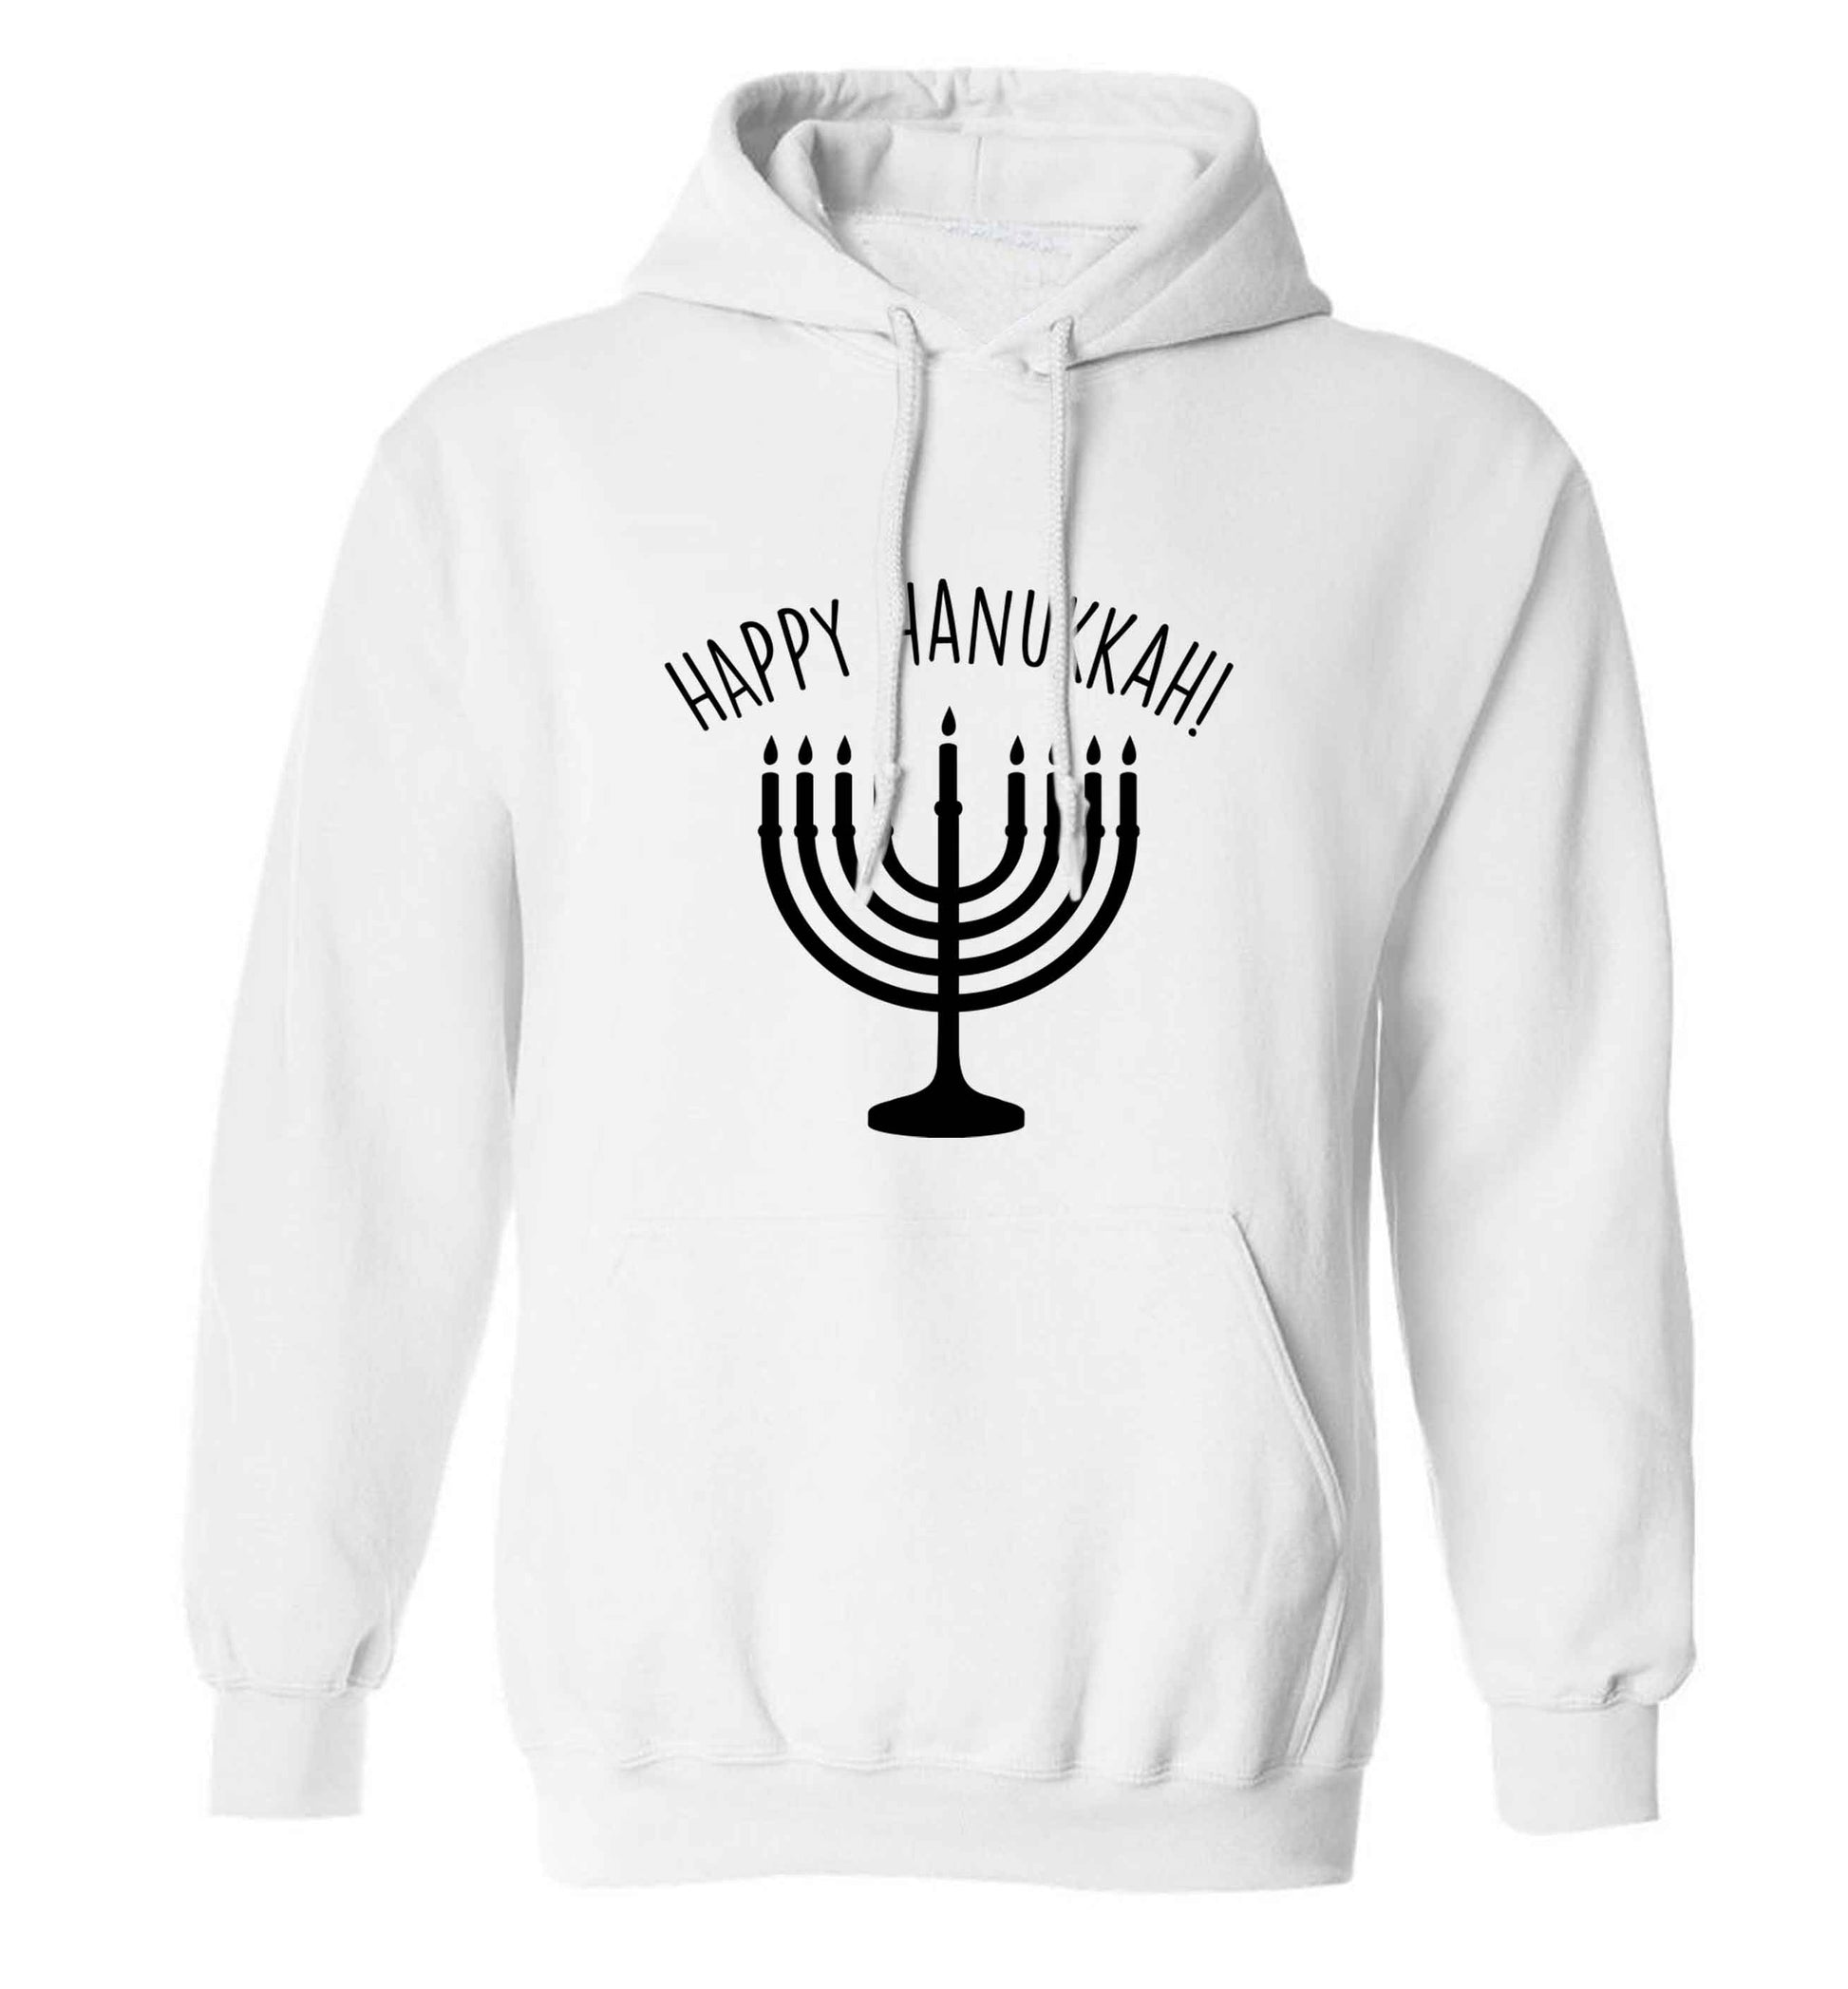 Happy hanukkah adults unisex white hoodie 2XL